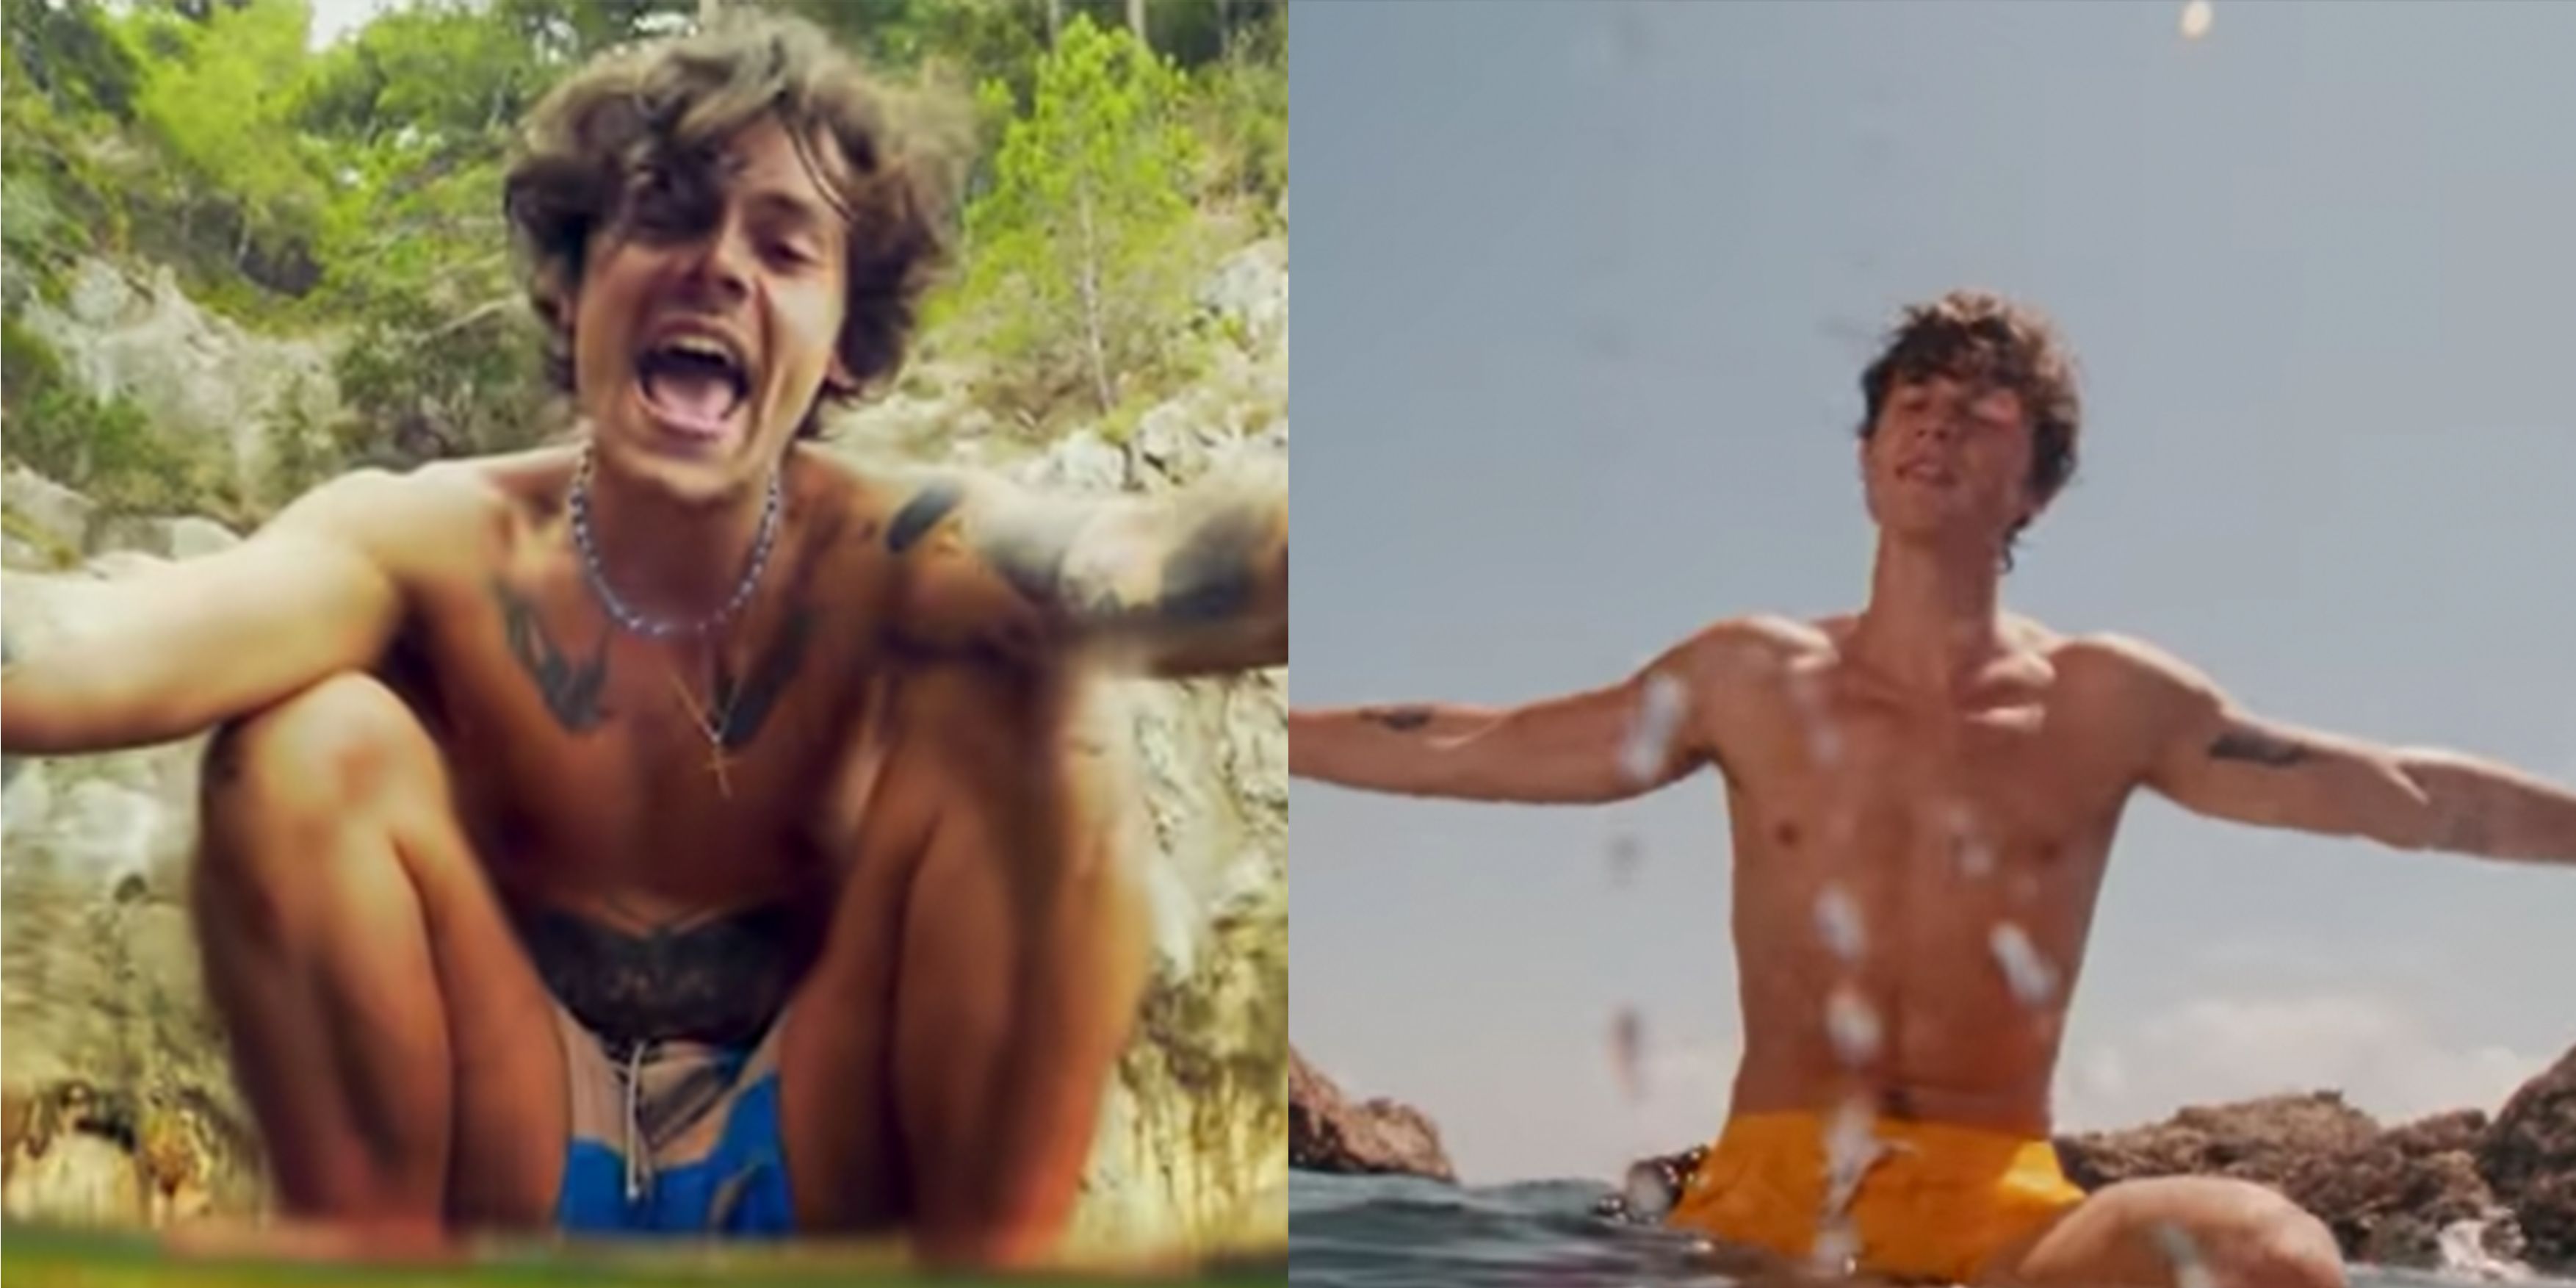 Los fans no pueden dejar de comparar los vídeos musicales de "Summer of Love" de Shawn Mendes y "Golden" de Harry Styles